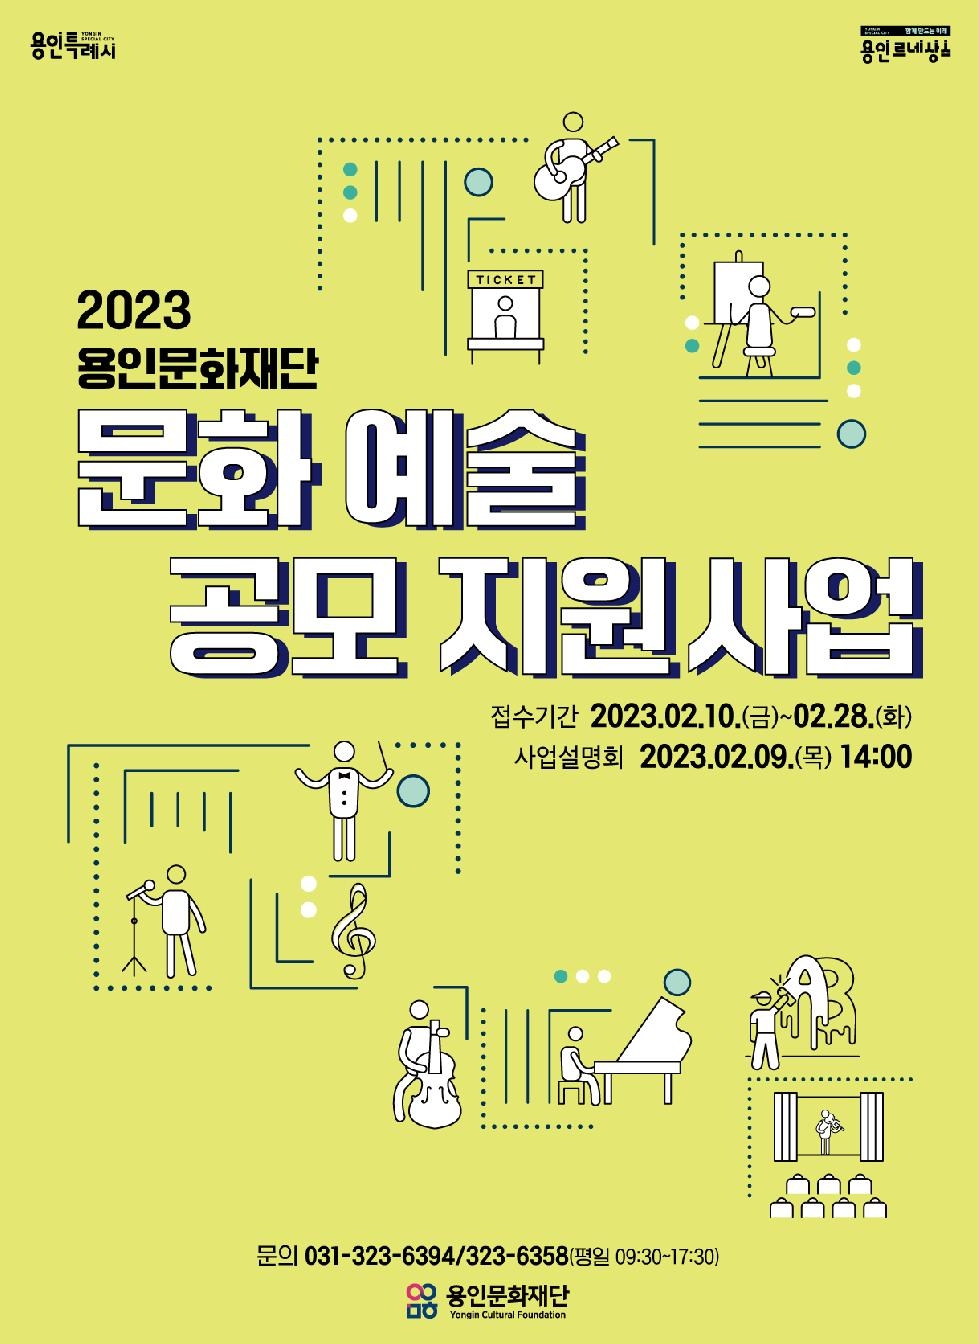 용인문화재단  [2023 문화예술 공모 지원사업] 접수